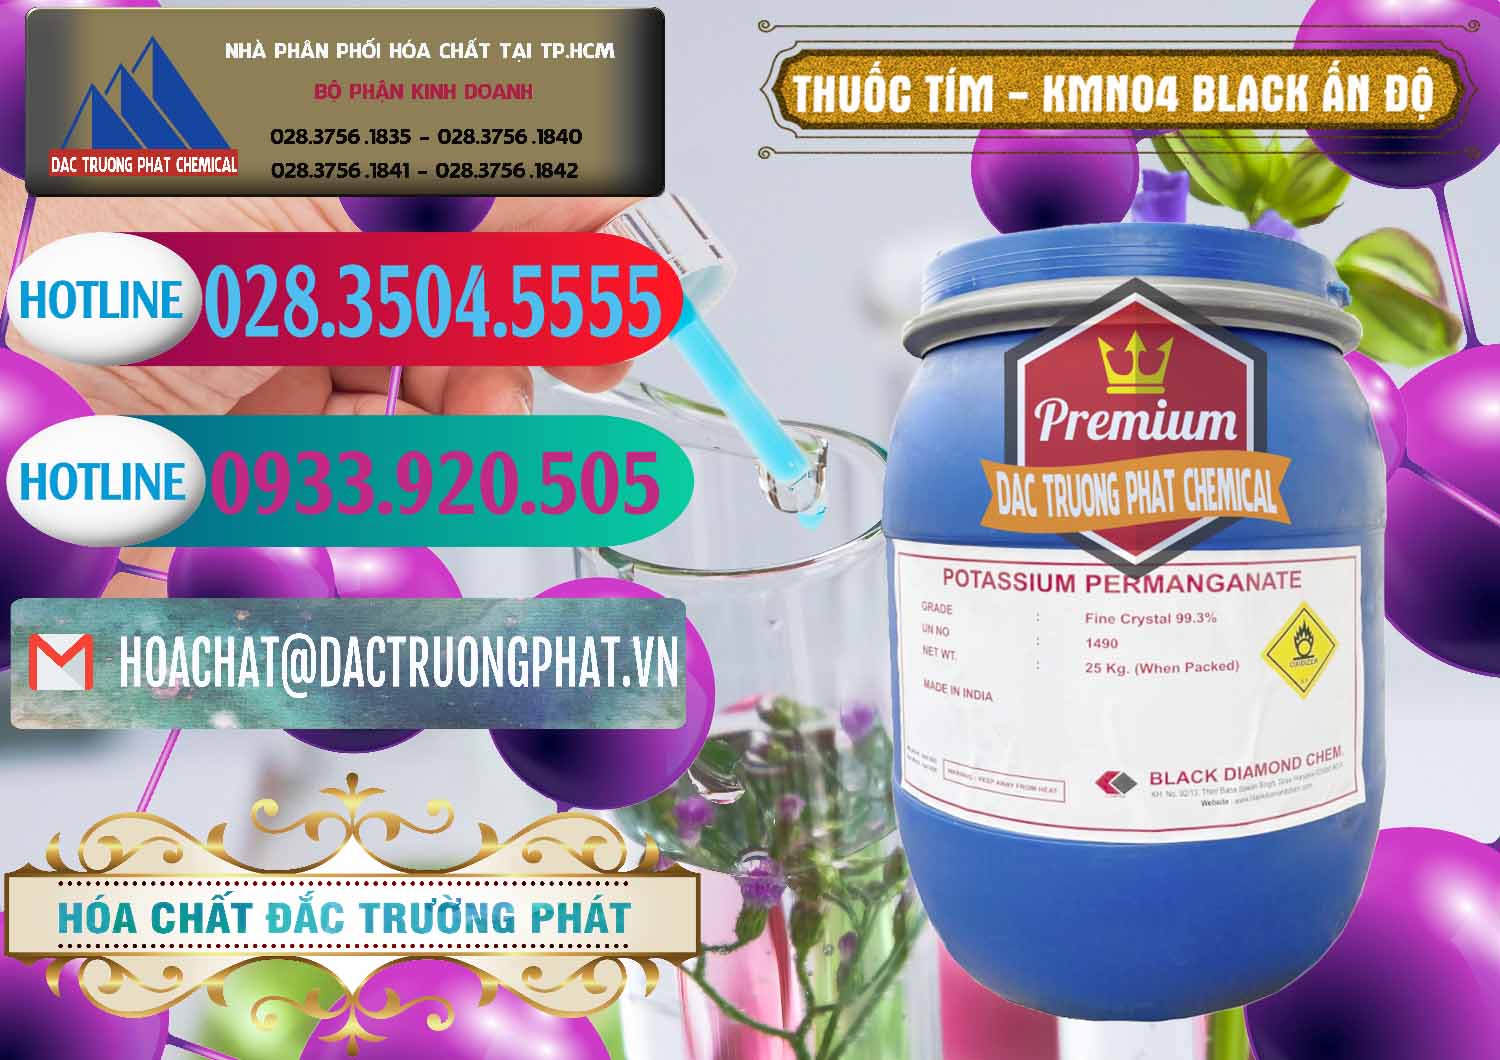 Kinh doanh - bán Thuốc Tím - KMNO4 Black Diamond Ấn Độ India - 0414 - Cty chuyên phân phối _ nhập khẩu hóa chất tại TP.HCM - truongphat.vn